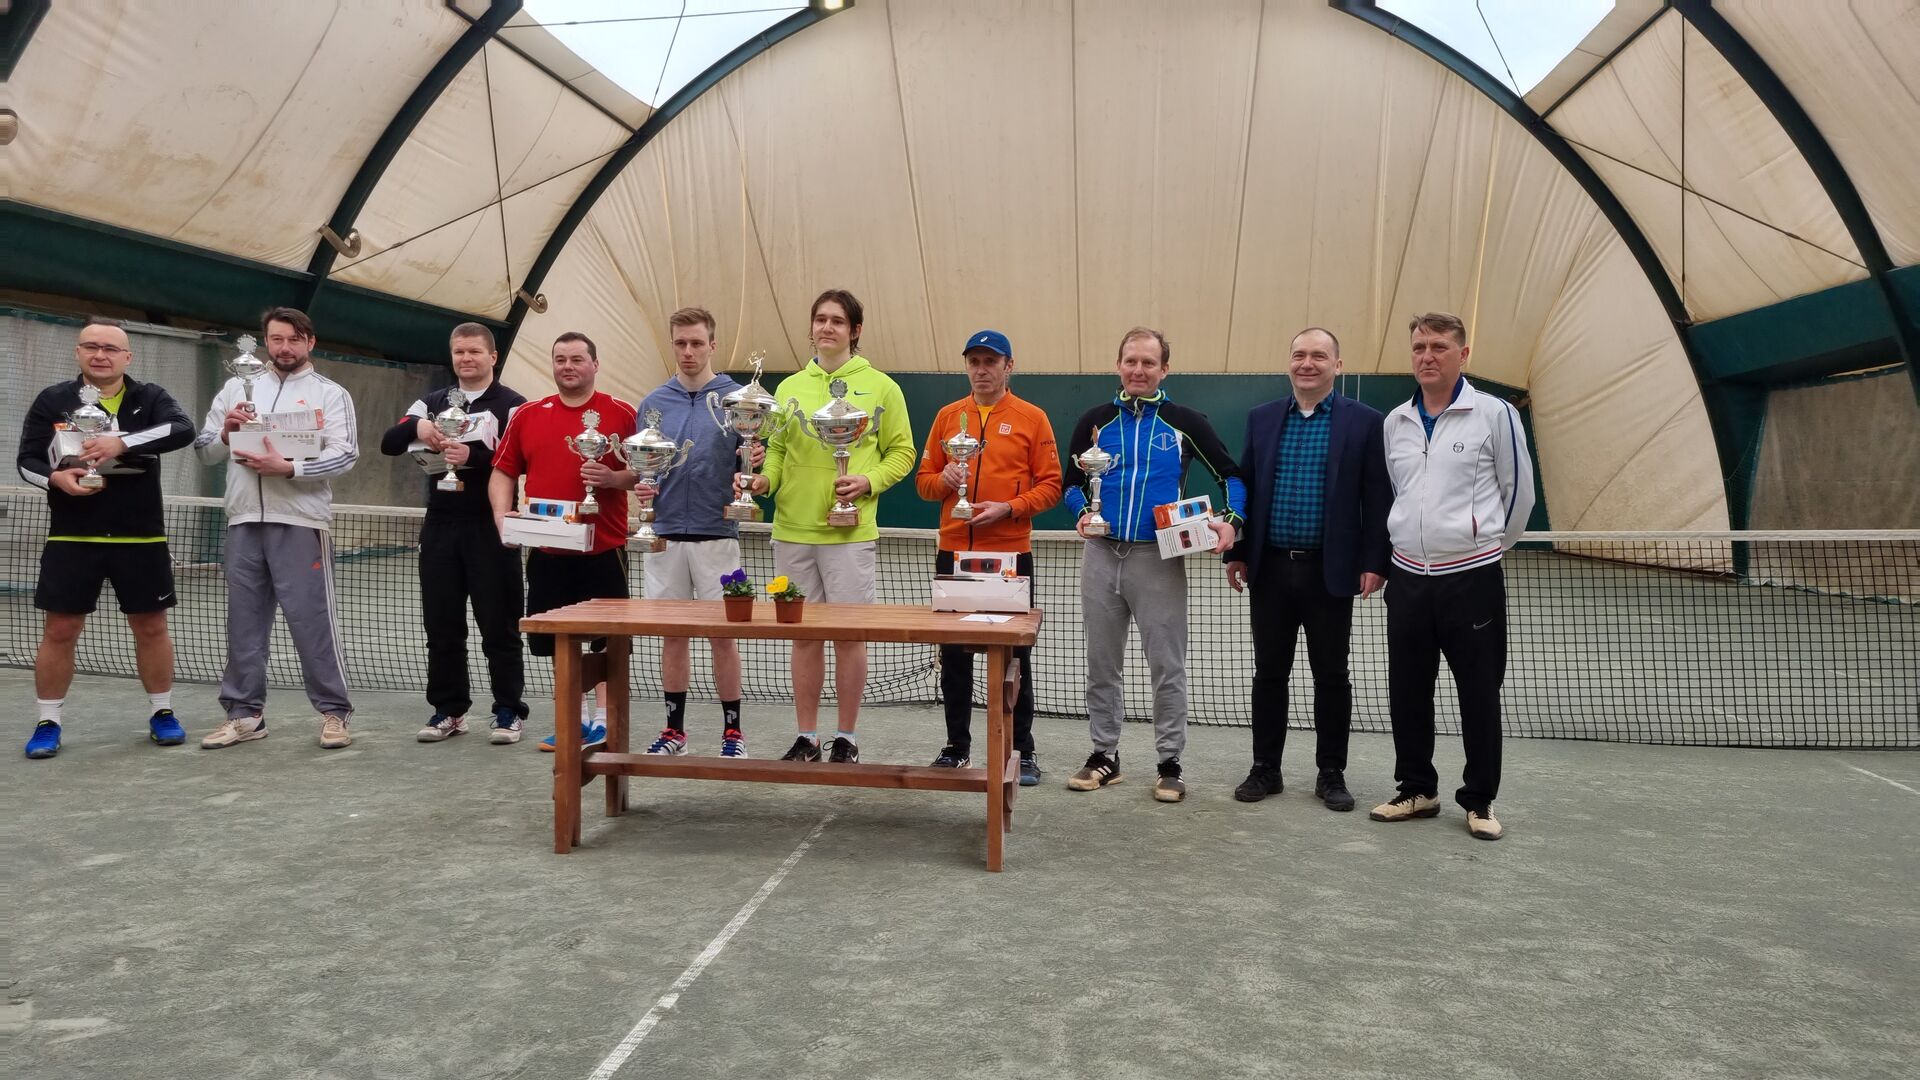 III Halowe Mistrzostwa Trójmiasta Ogrodów w tenisie ziemnym – gra podwójna